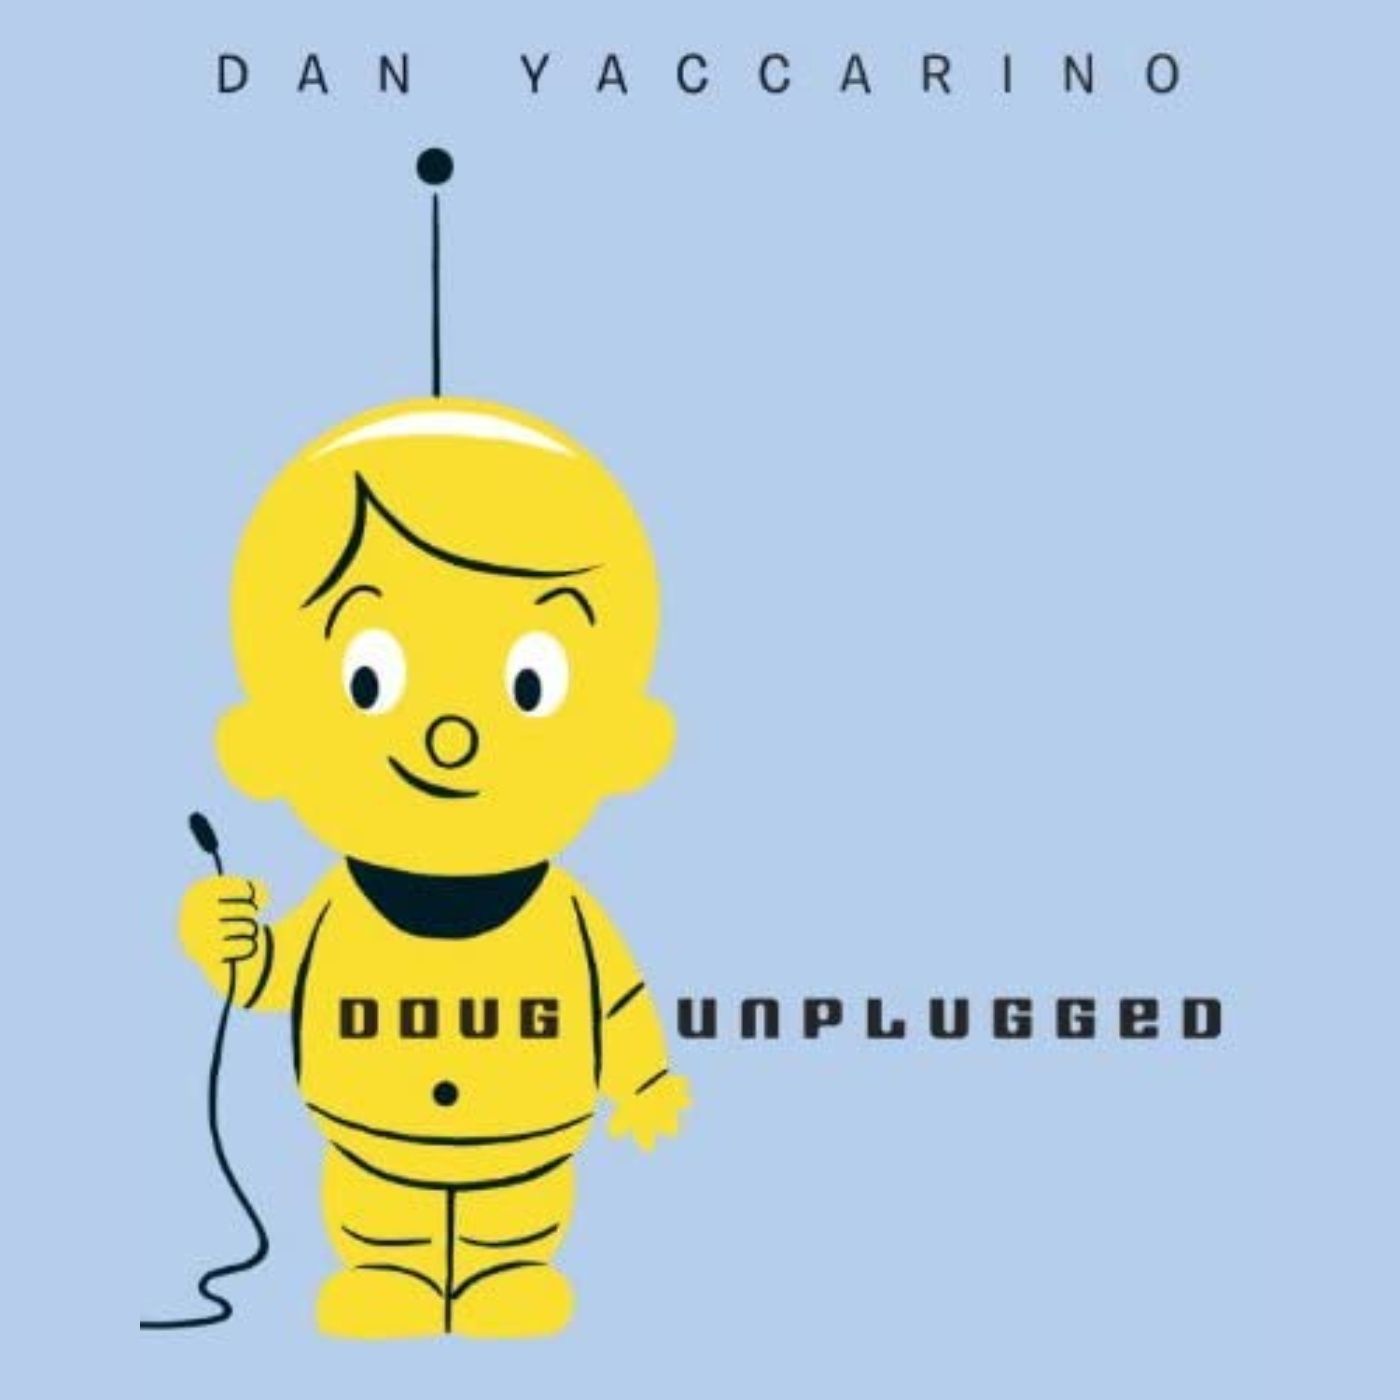 Doug Unplugged by Dan Yaccarino - Read by Martyn Kenneth